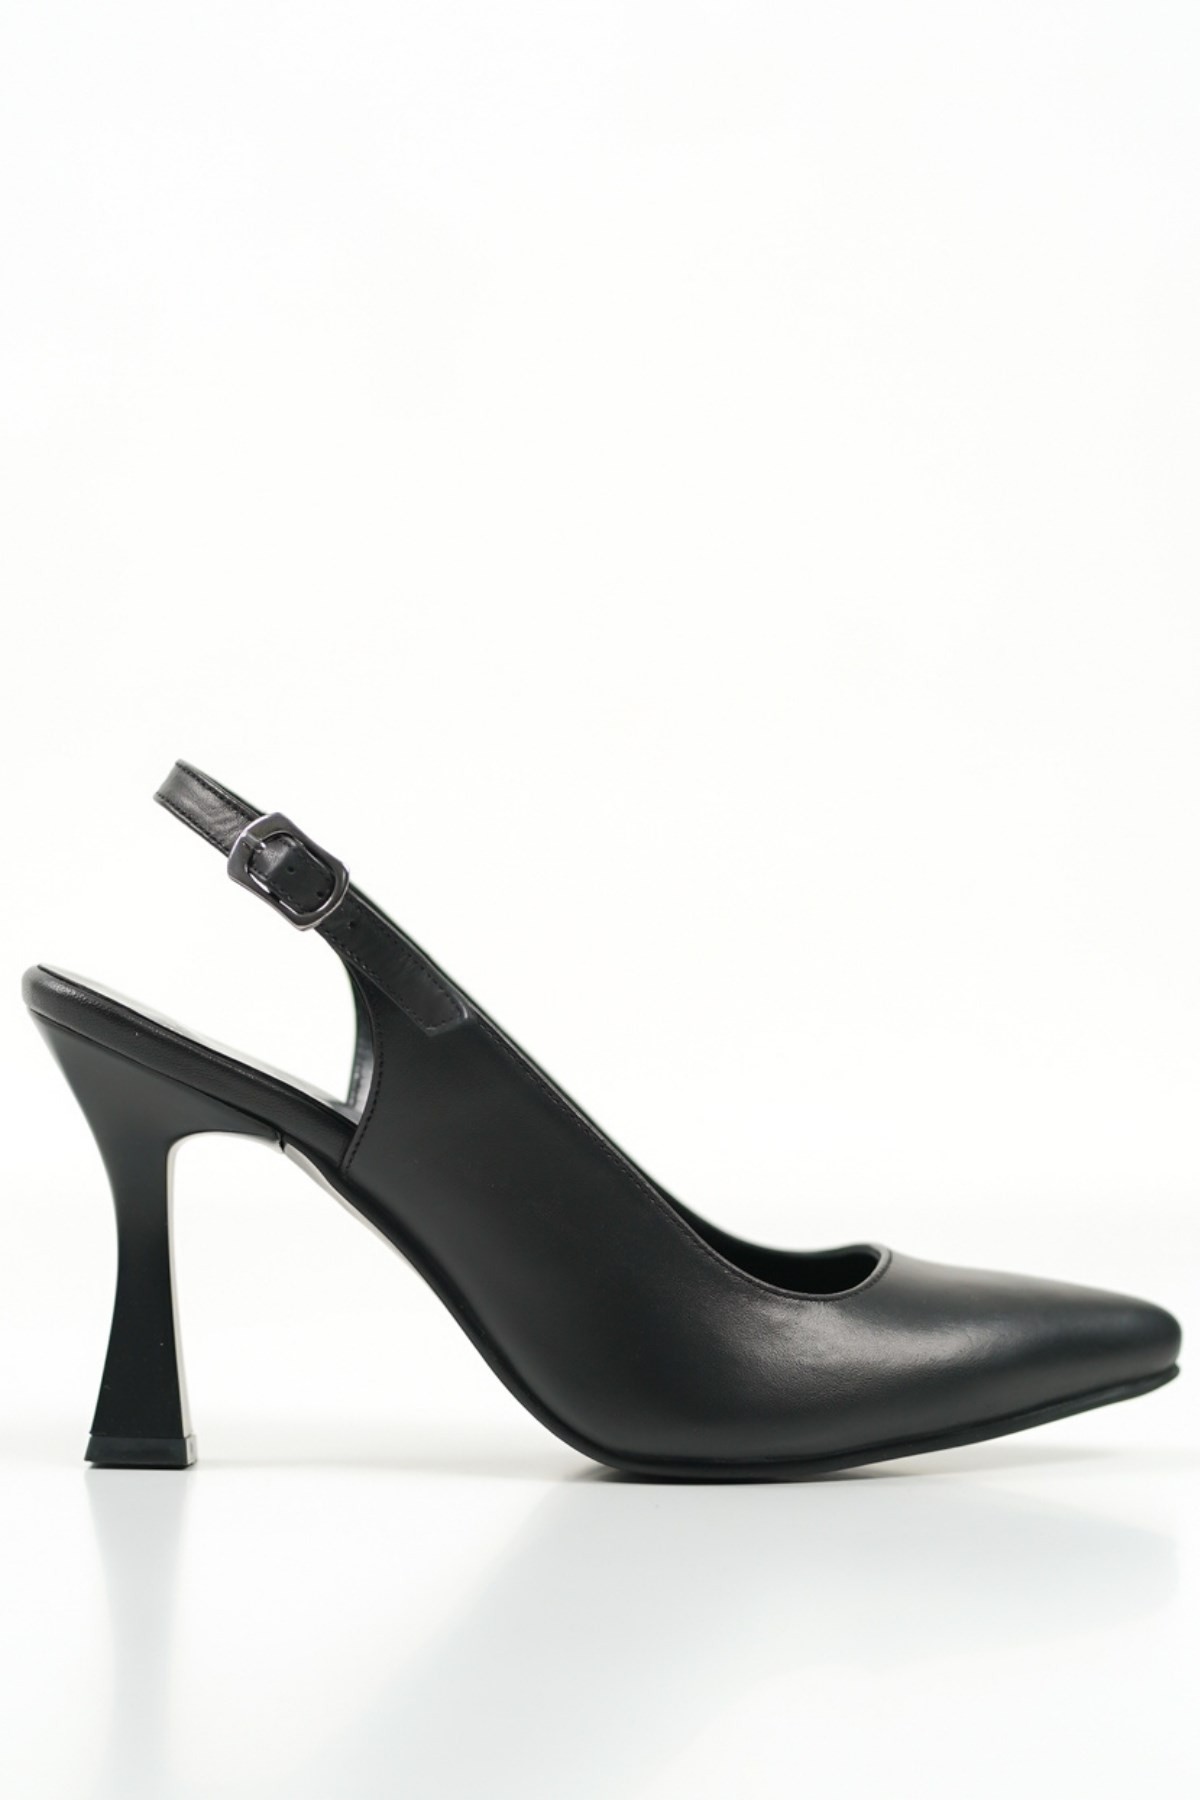 Kadın Hakiki Deri Sivri Burun Stiletto Topuklu Ayakkabı - Siyah